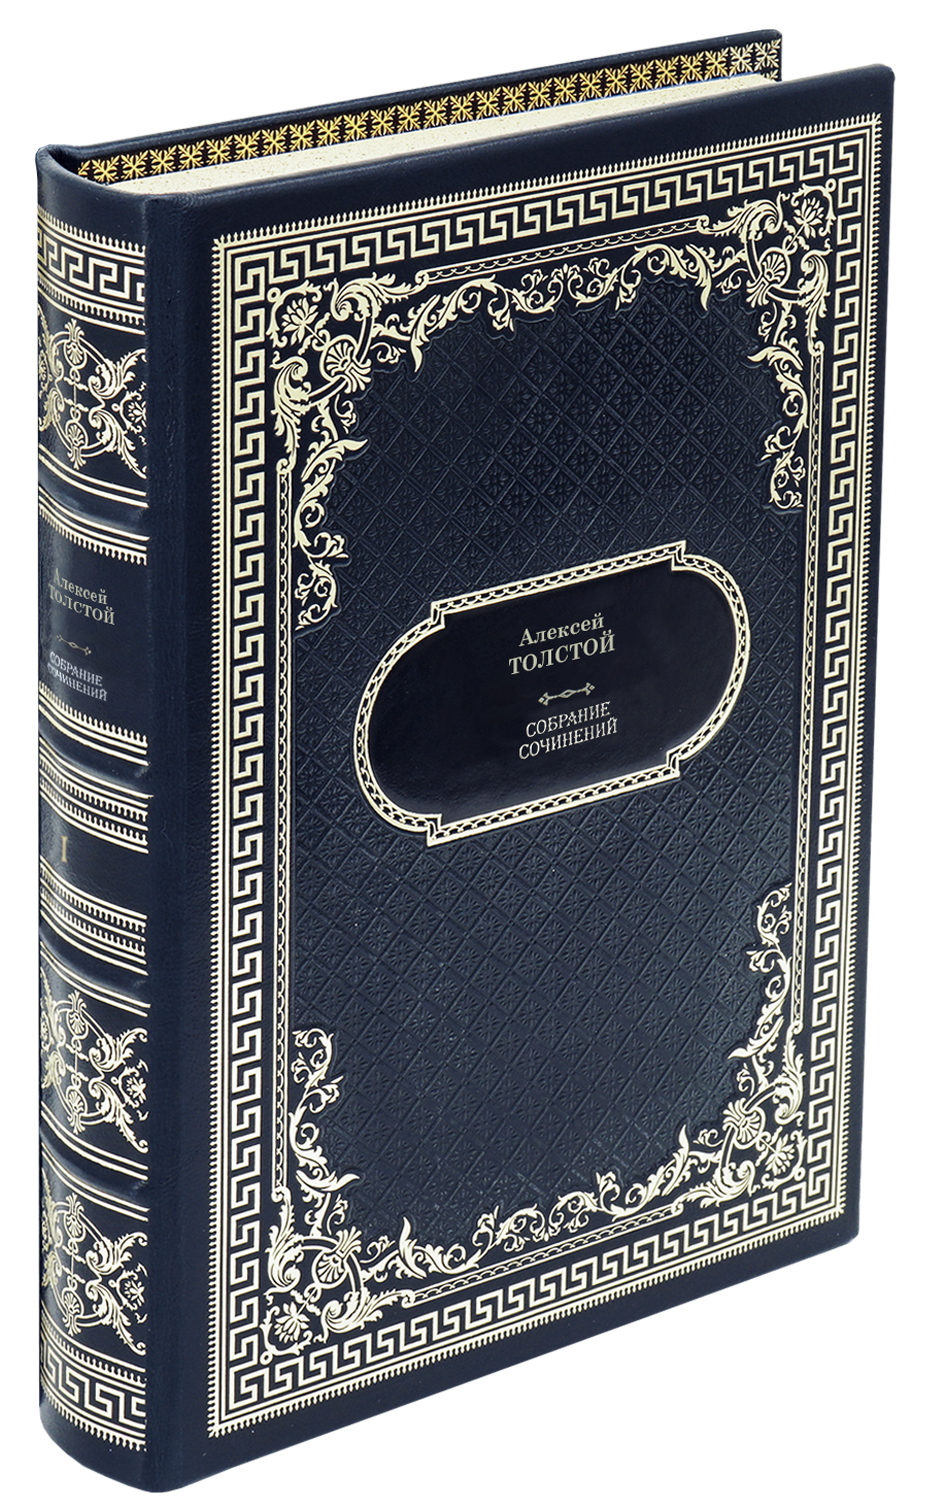 Толстой А.Н. Собрание сочинений в 10 томах в дизайне «Ампир»